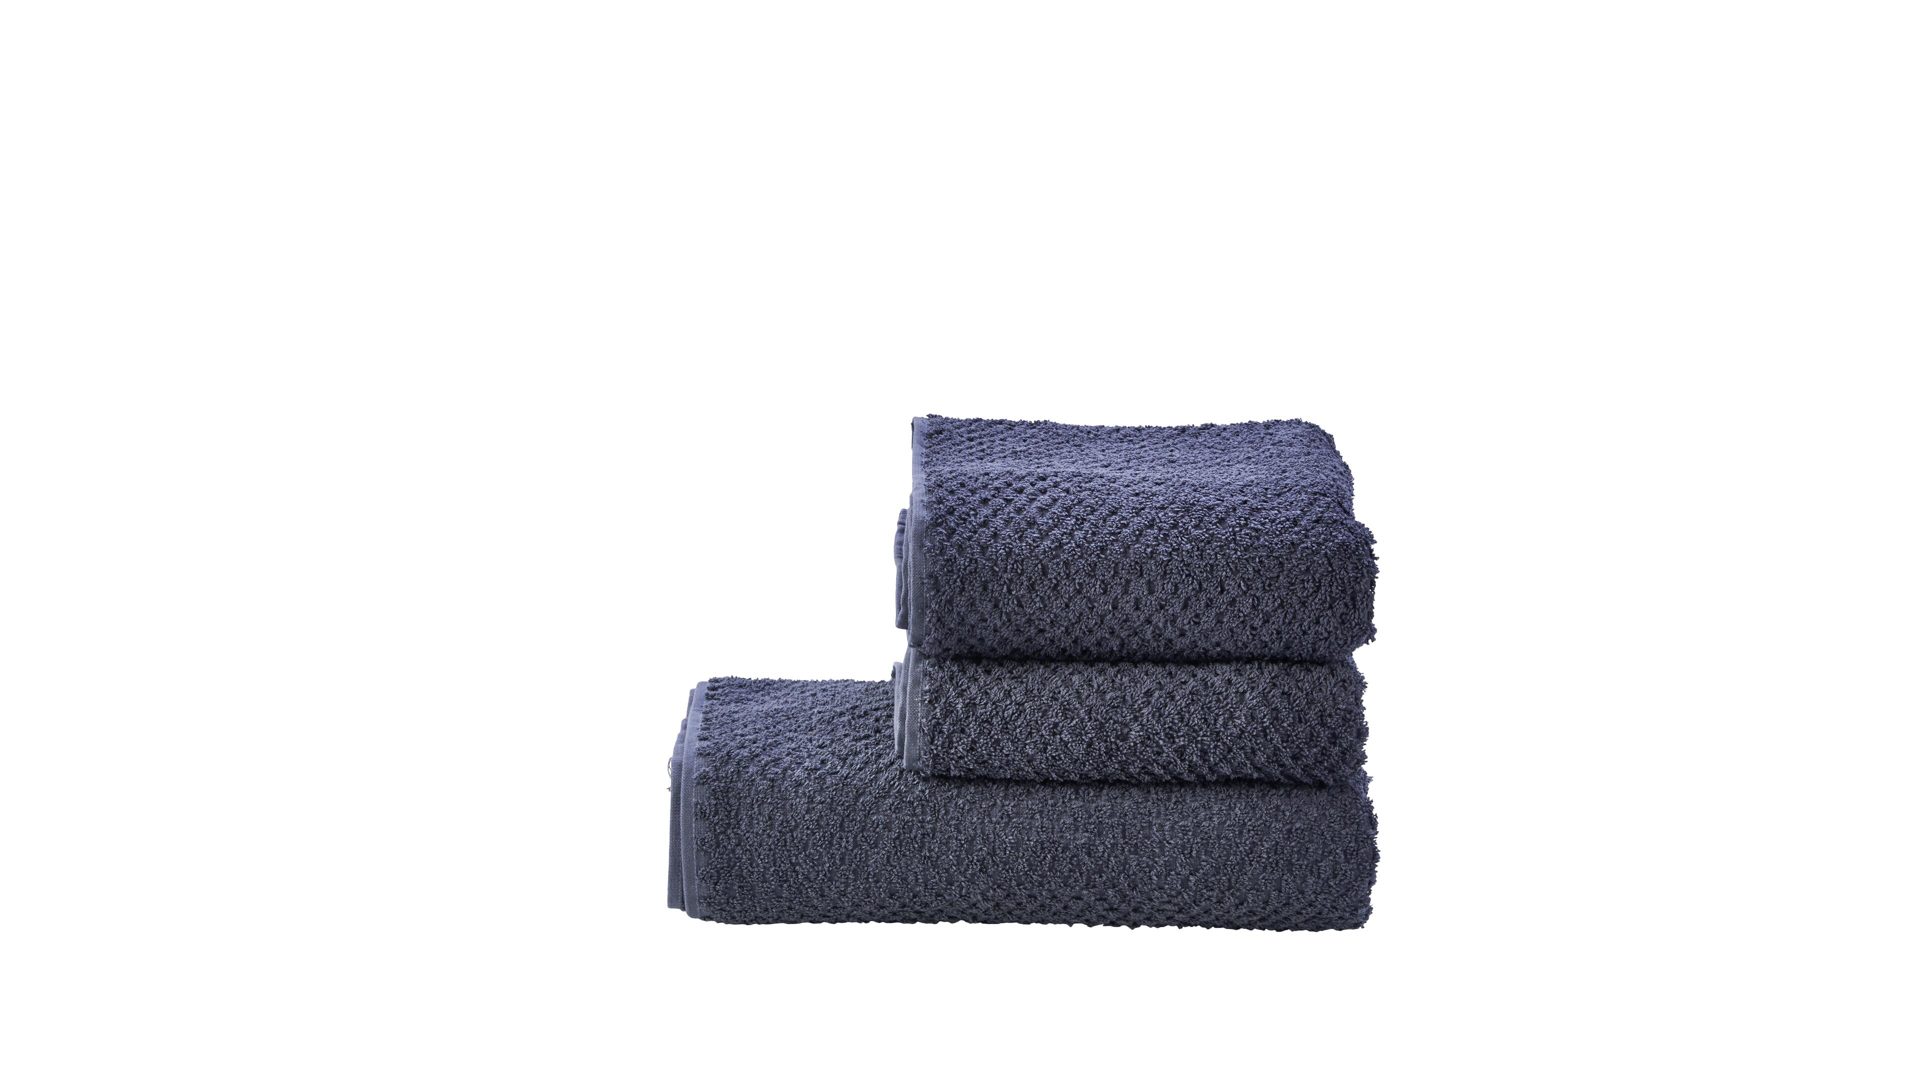 Handtuch-Set Done.® aus Stoff in Anthrazit done.® Handtuch-Set Provence Honeycomb - Heimtextilien anthrazitfarbene Baumwolle – dreiteilig